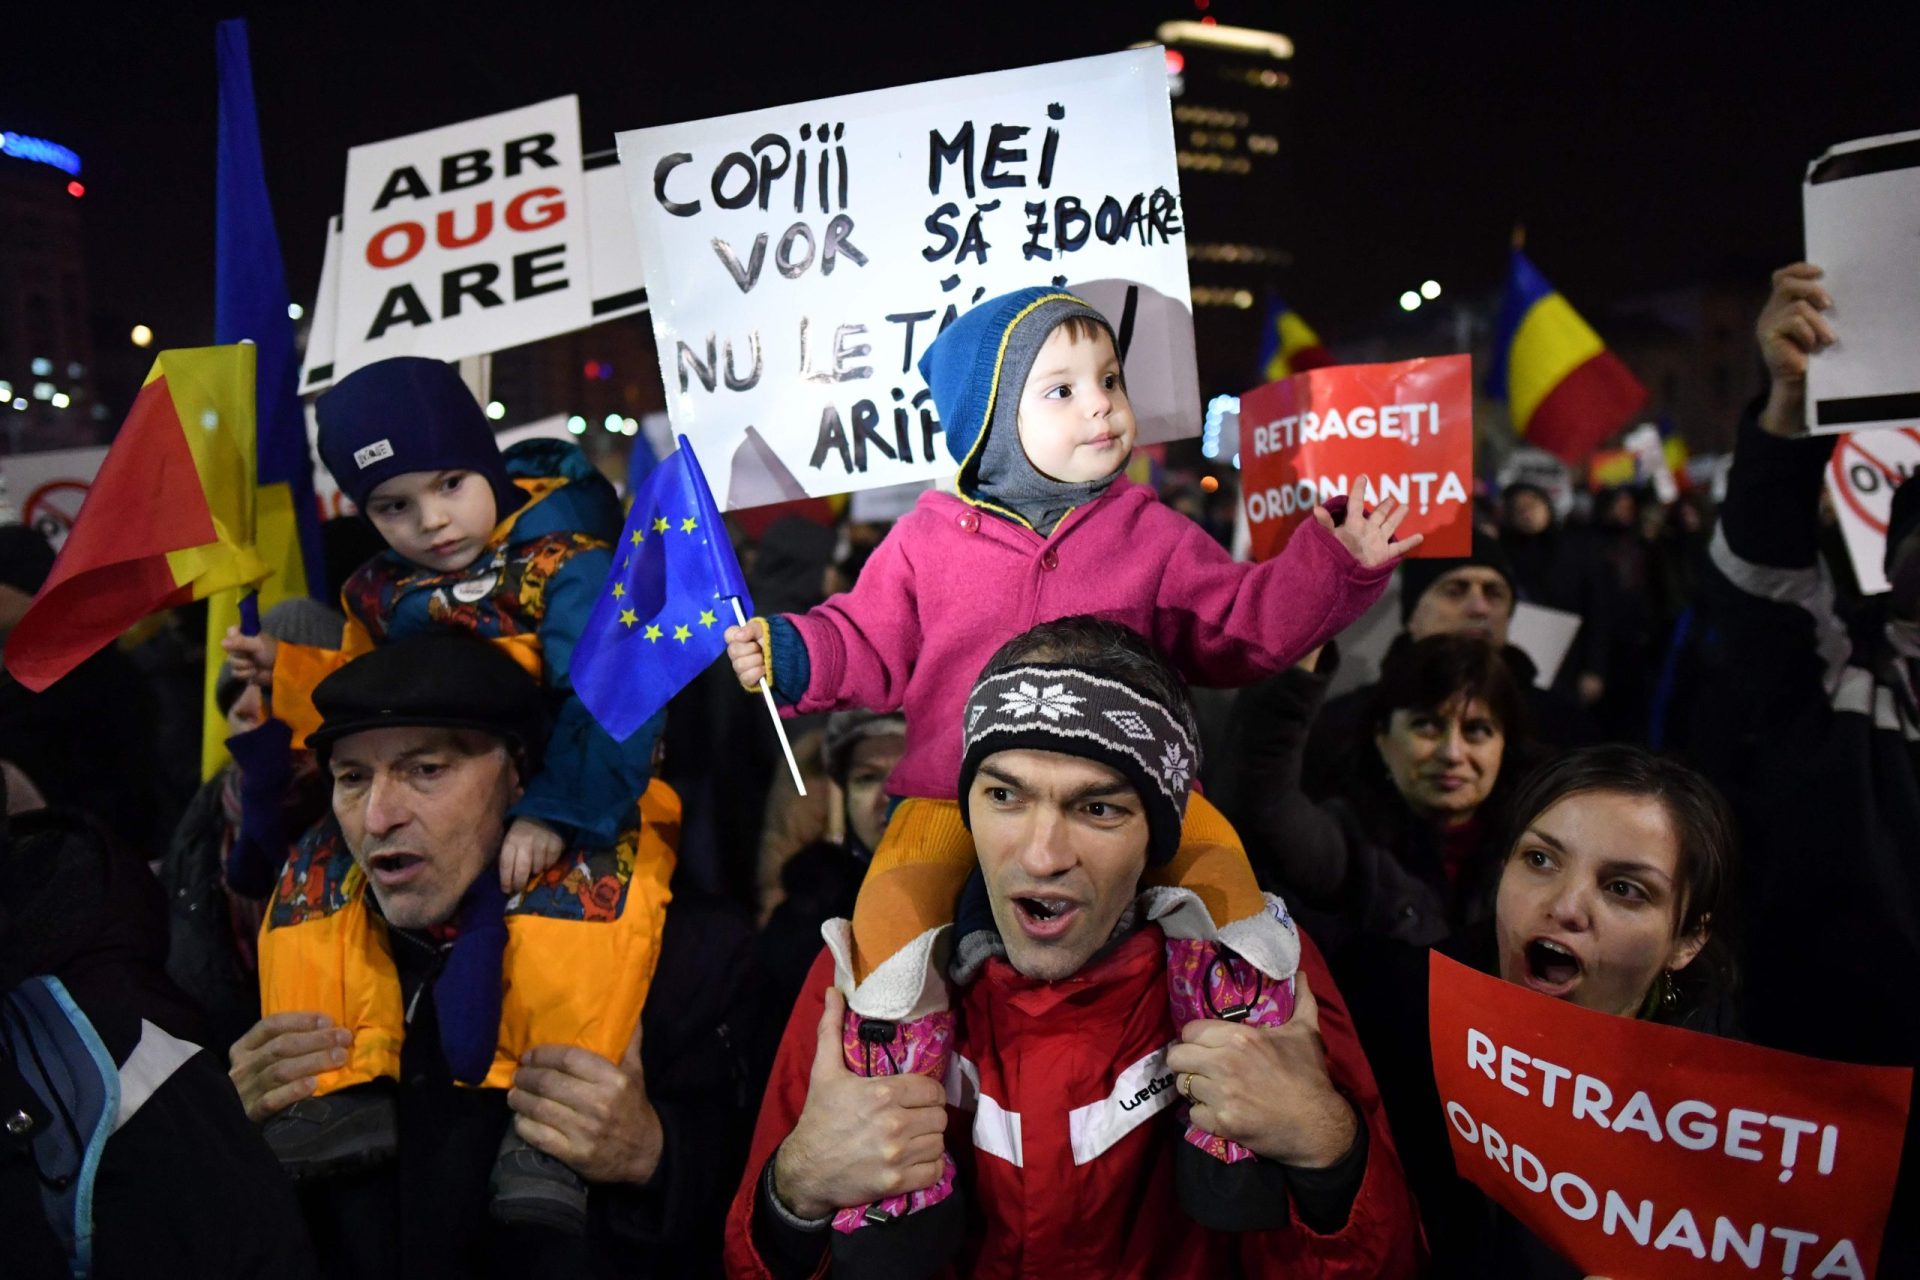 Roménia: Governantes aprovam por unanimidade proposta de referendo sobre corrupção